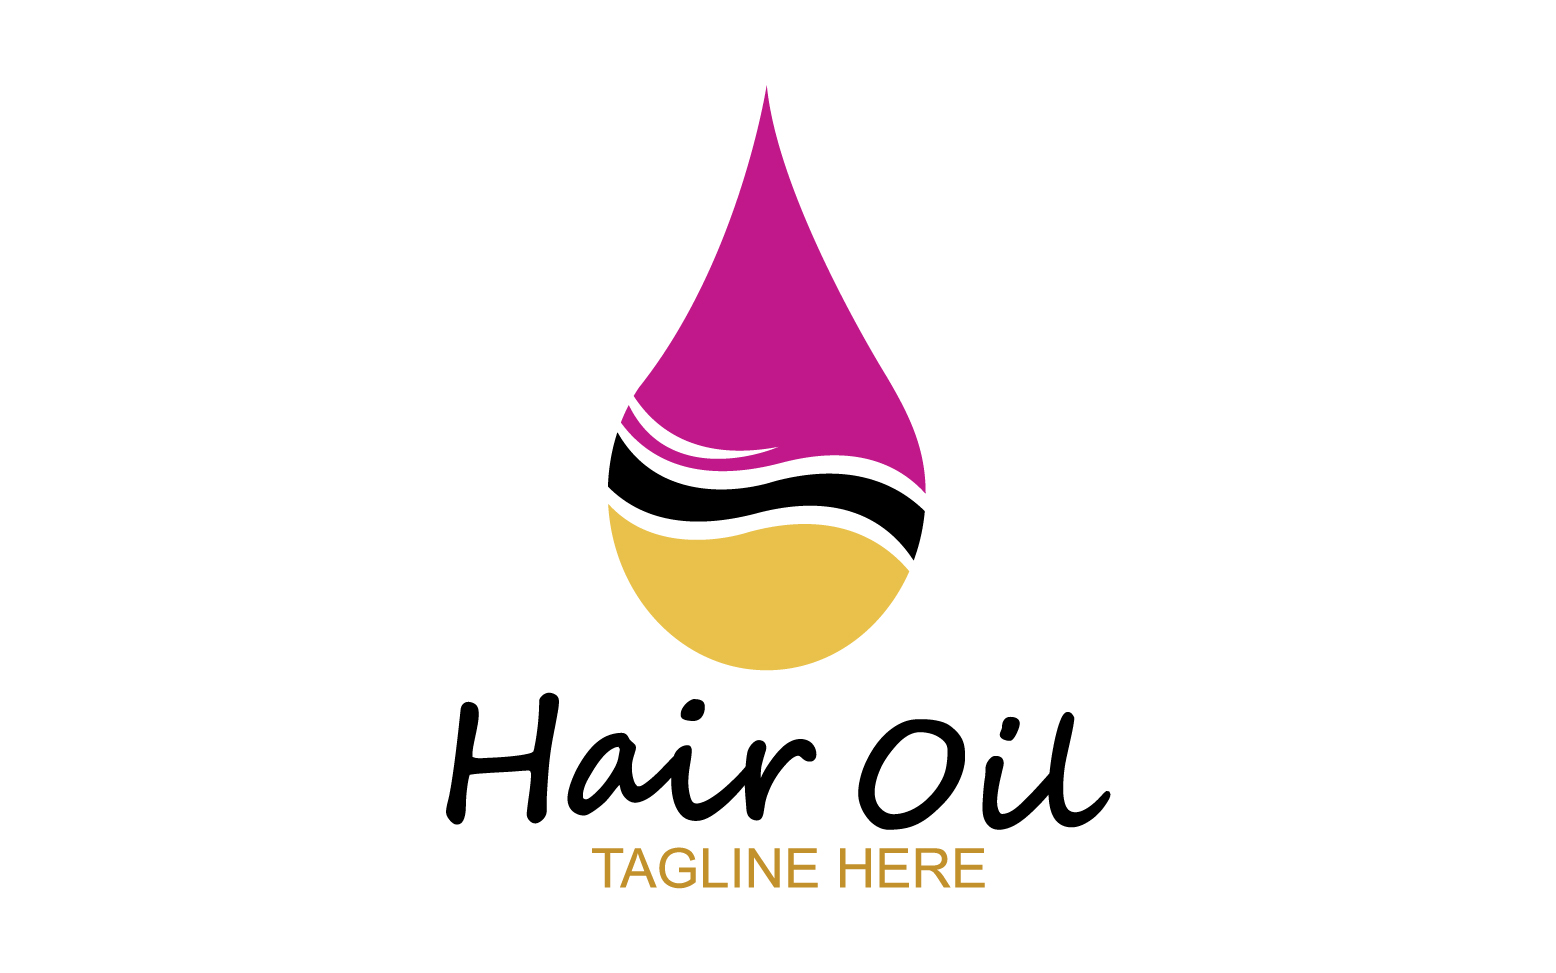 Hair oil health logo vector template v33